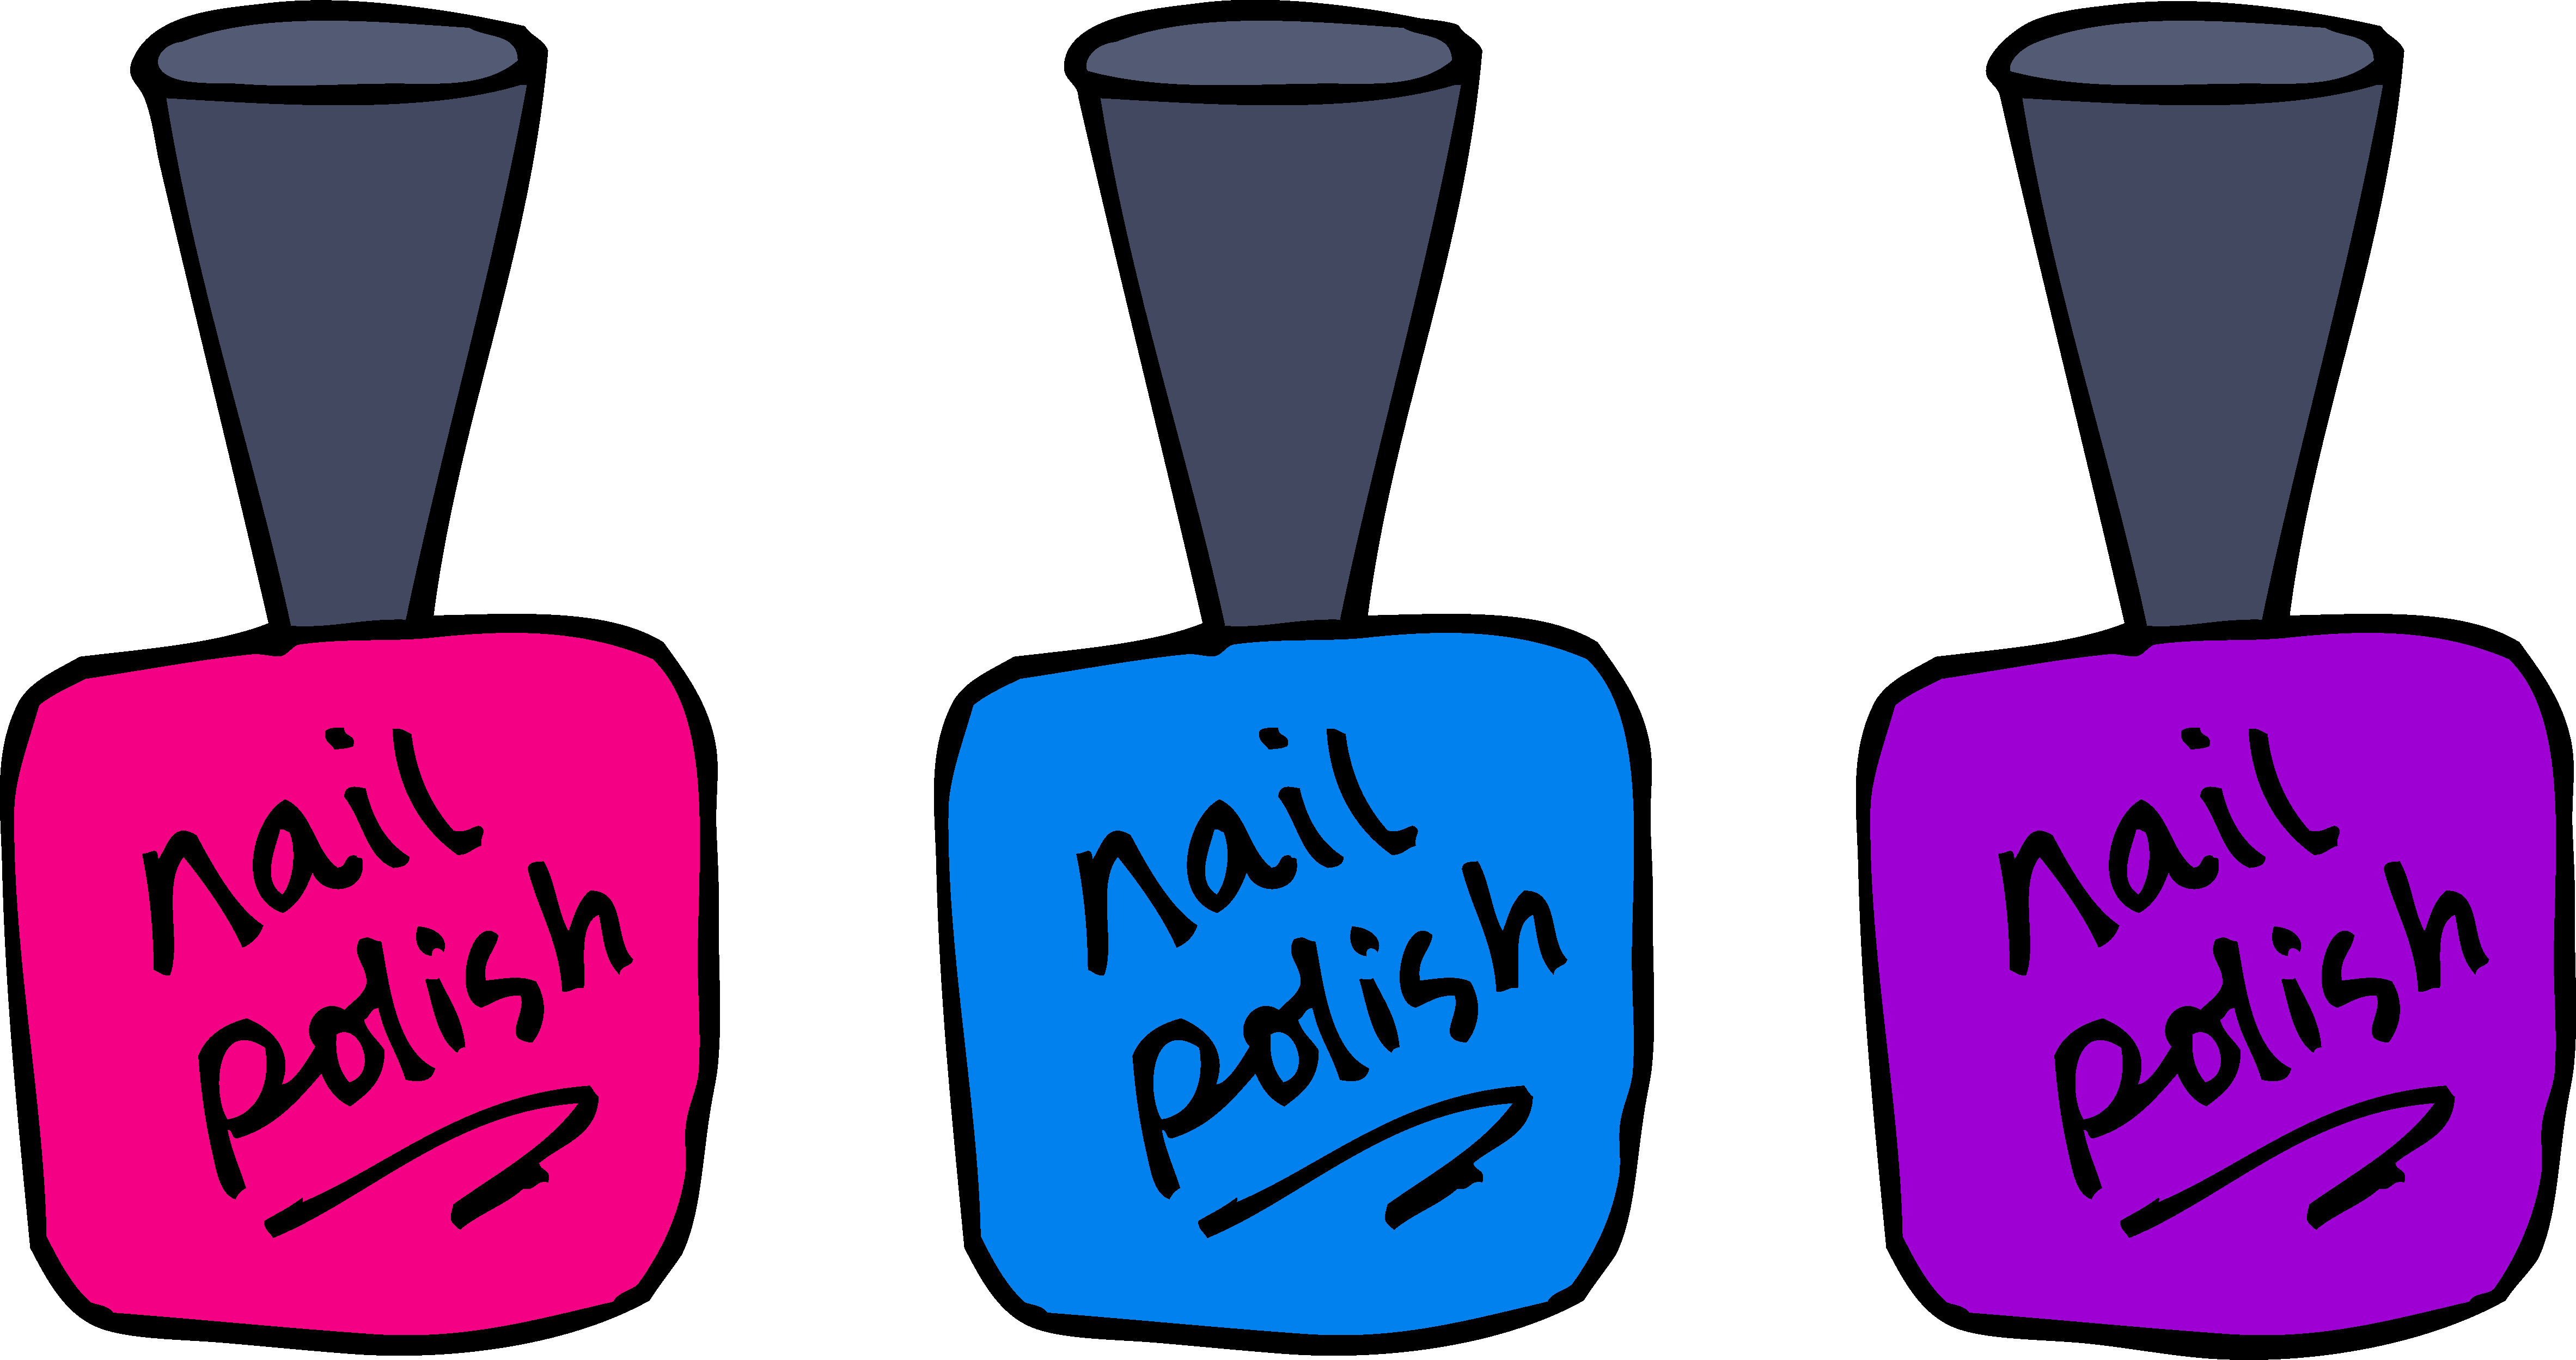 nail spa clip art